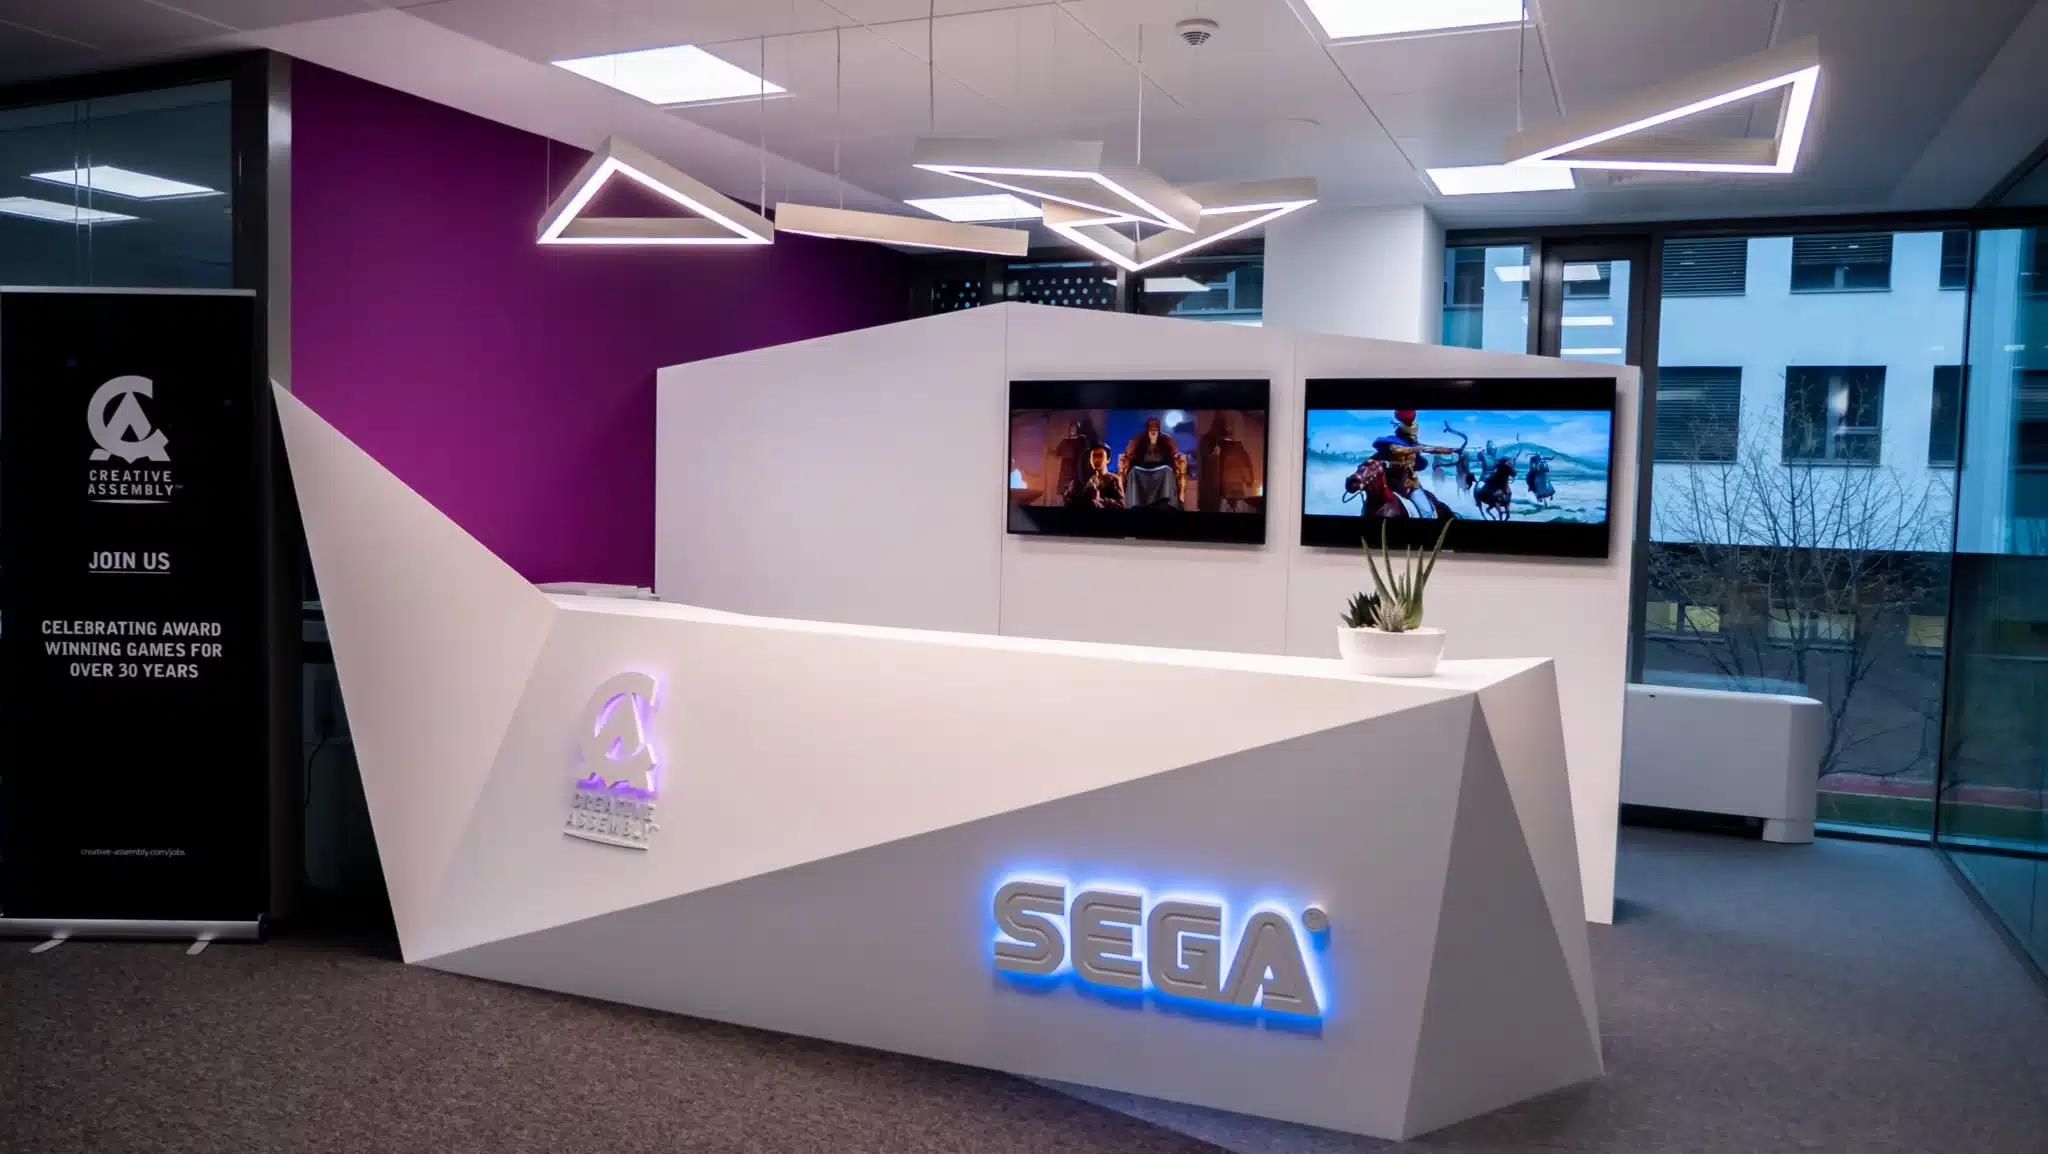 SEGA impose à Creative Assembly de se recentrer sur les jeux Total War après une série de désastres.